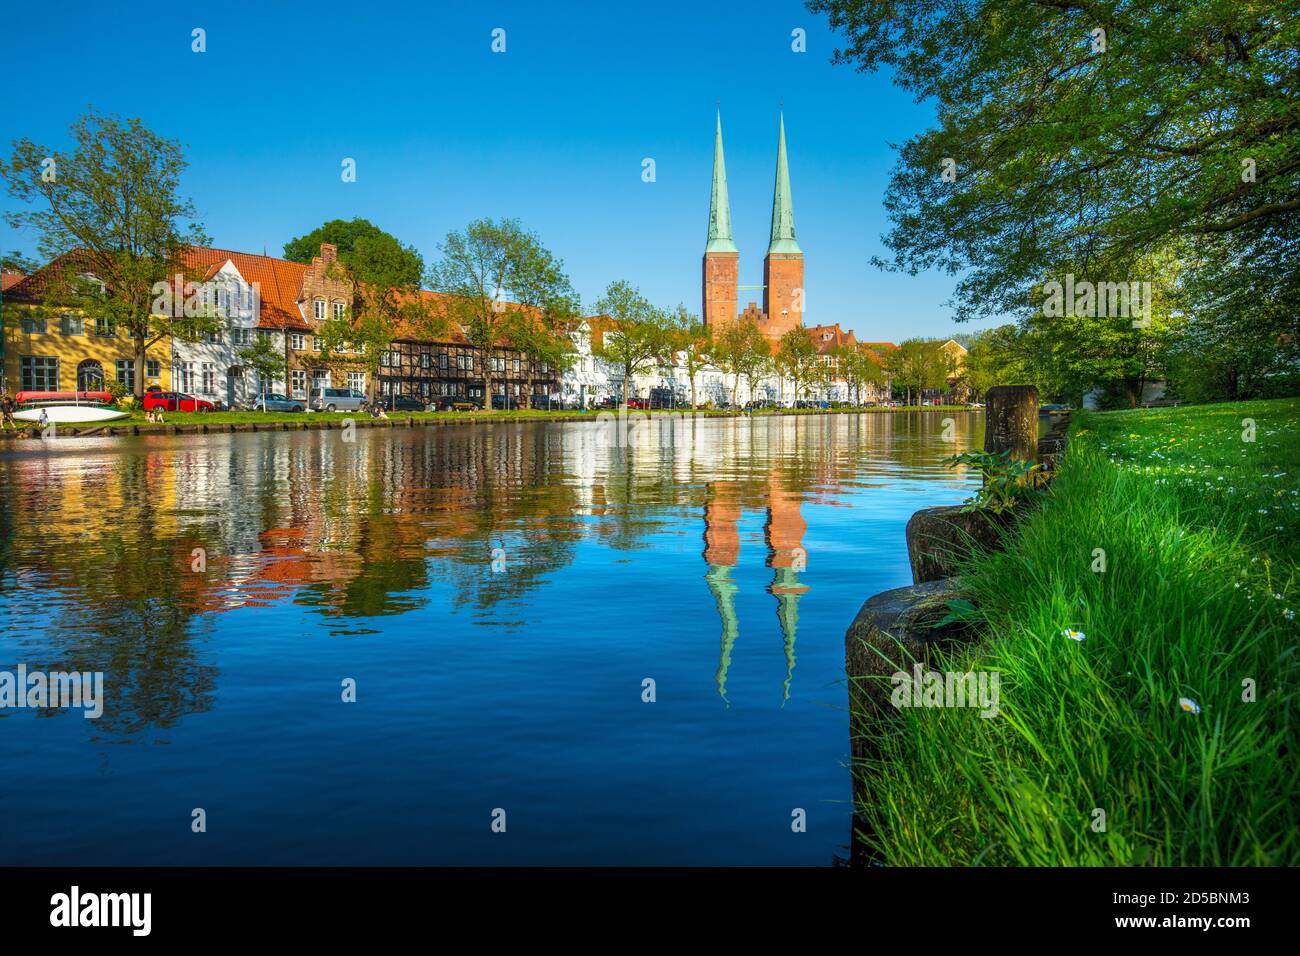 Deutschland, Schleswig-Holstein, Hansestadt Lübeck. Sommerabend auf dem Untertrave. Blick auf den Lübecker Dom. Stock Photo